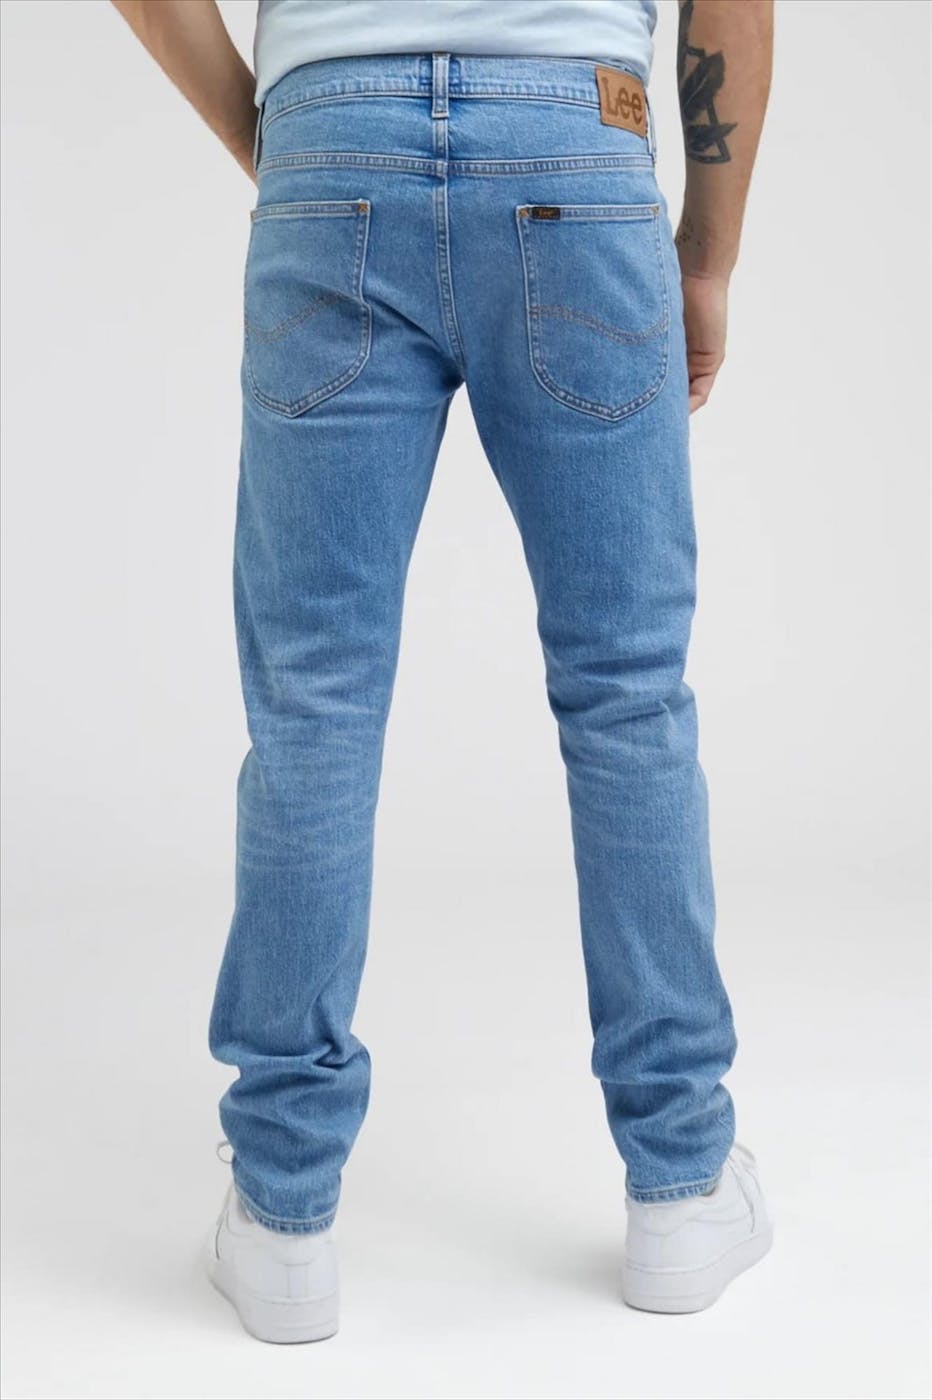 Lee - Blauwe Luke Slim Tapered jeans